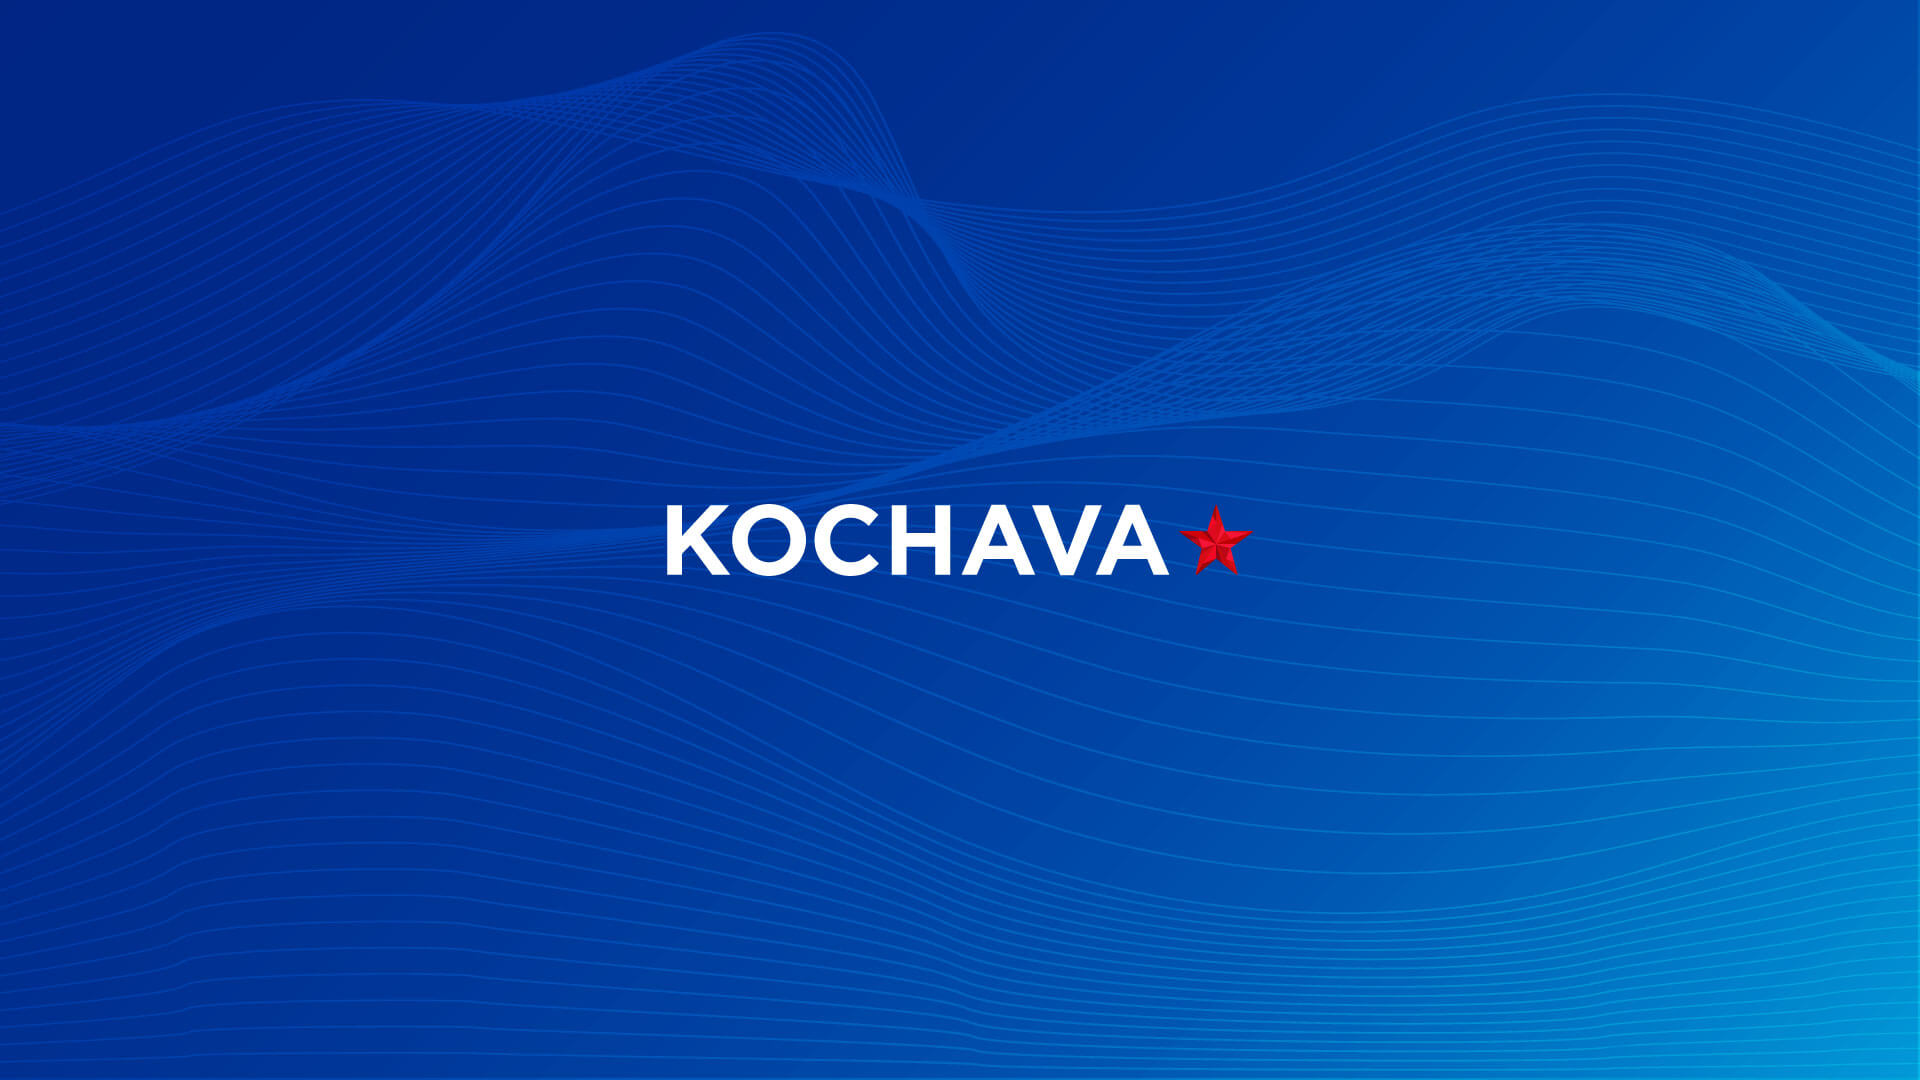 Kochava logo over background illustration